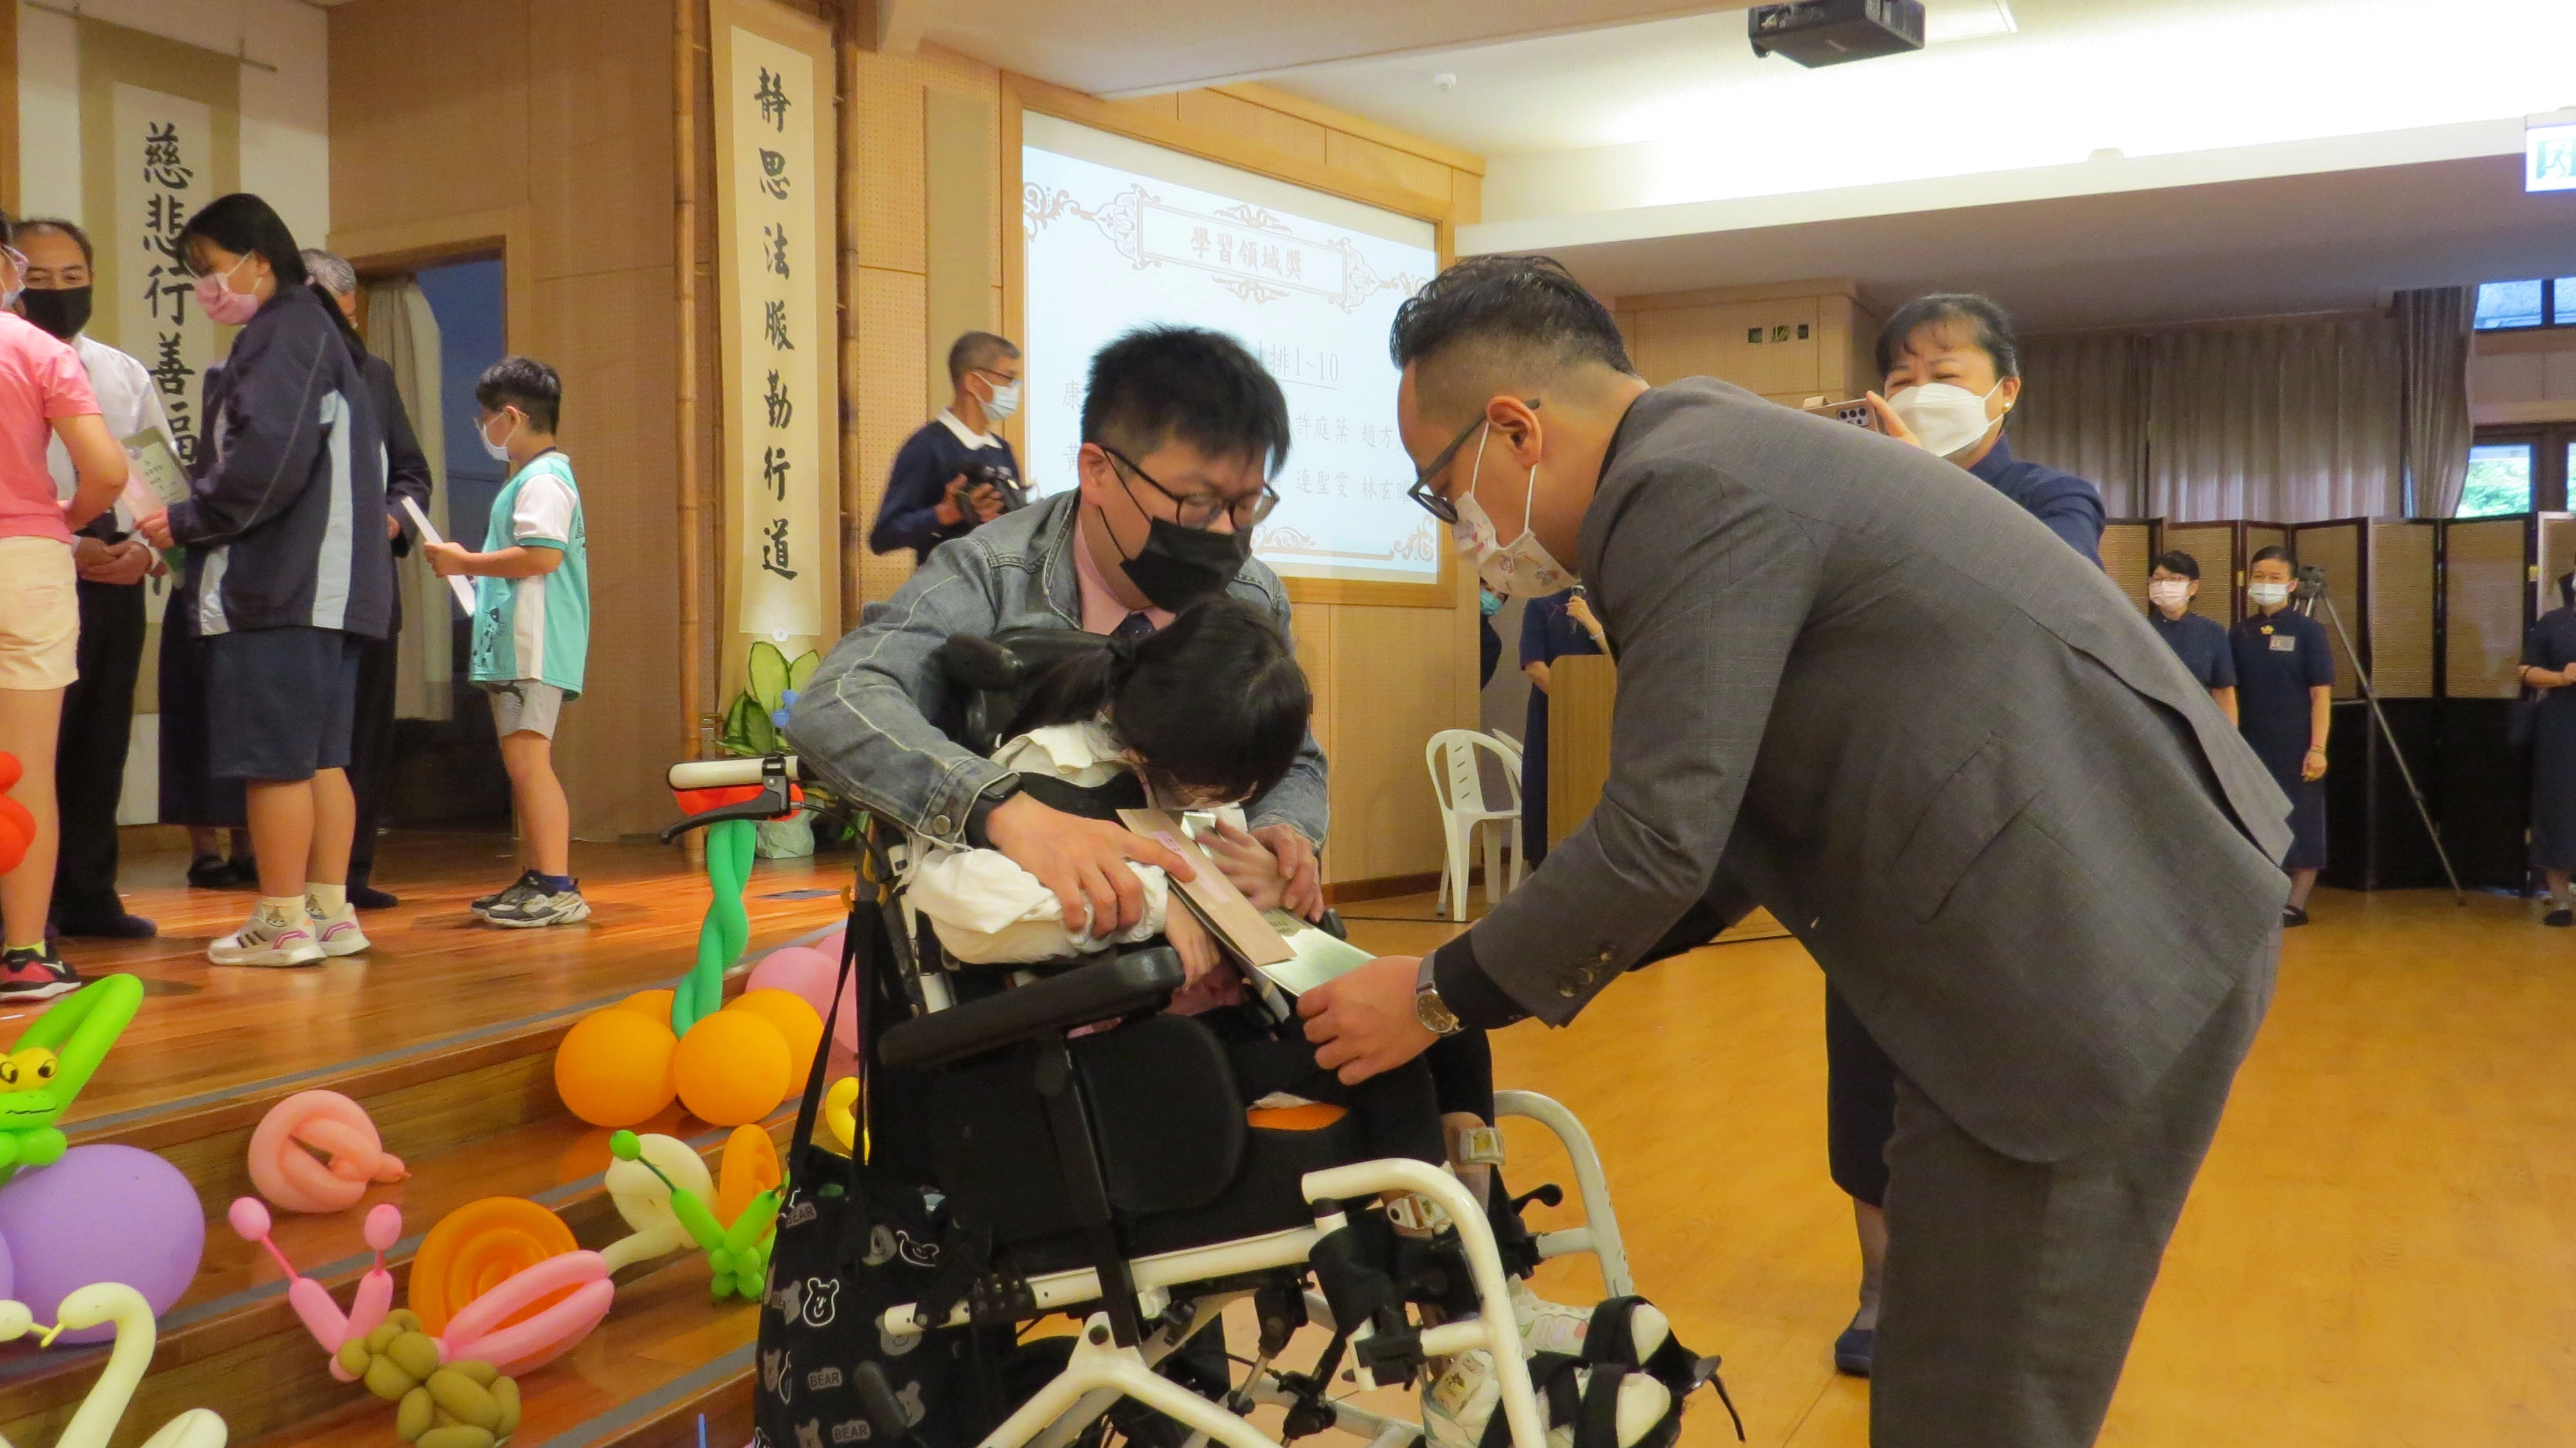 基隆市議會童子瑋議長為坐在輪椅上的趙同學頒獎。